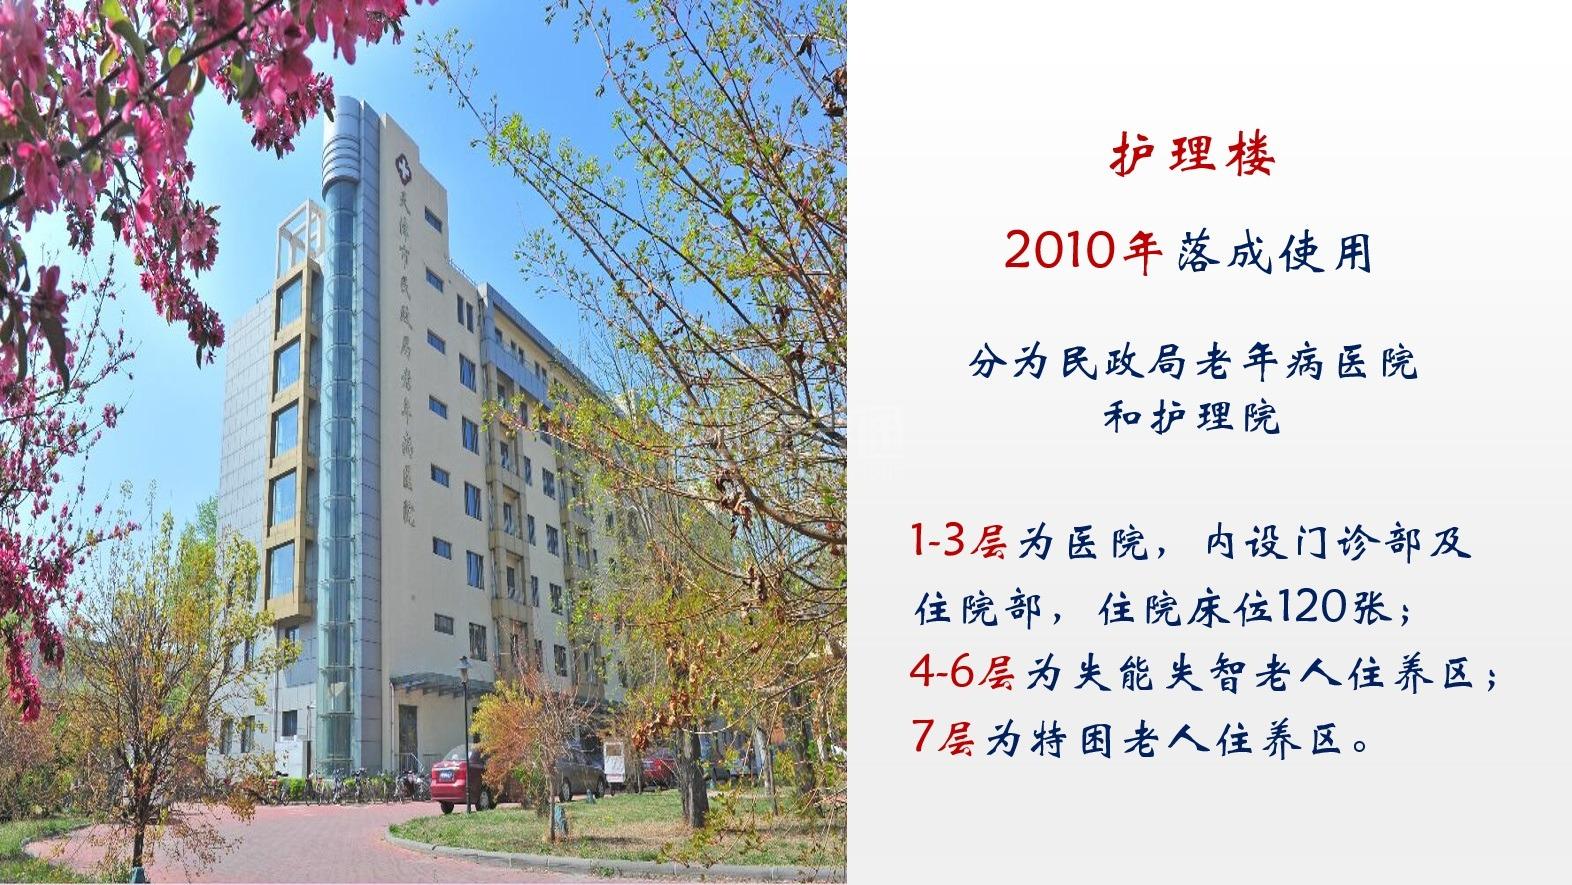 天津市养老院服务项目图4让长者主动而自立地生活